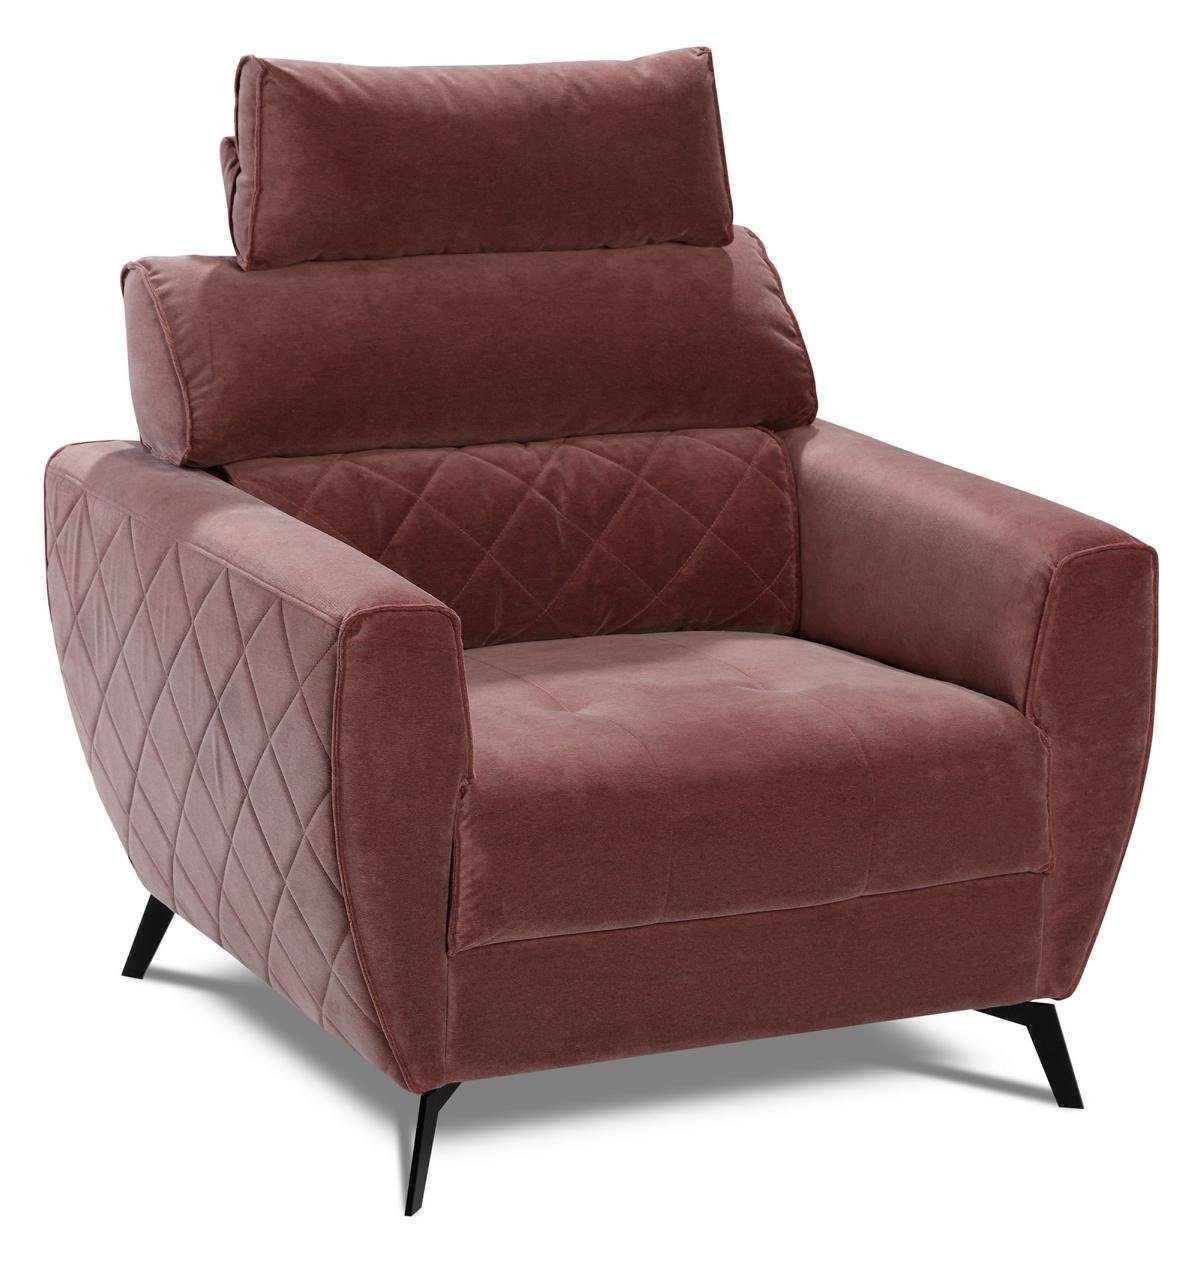 Kunstleder 2+1+1 Design Couch Wohnzimmer-Set, Leder Rot Garnituren Sitz Polster Sofa JVmoebel